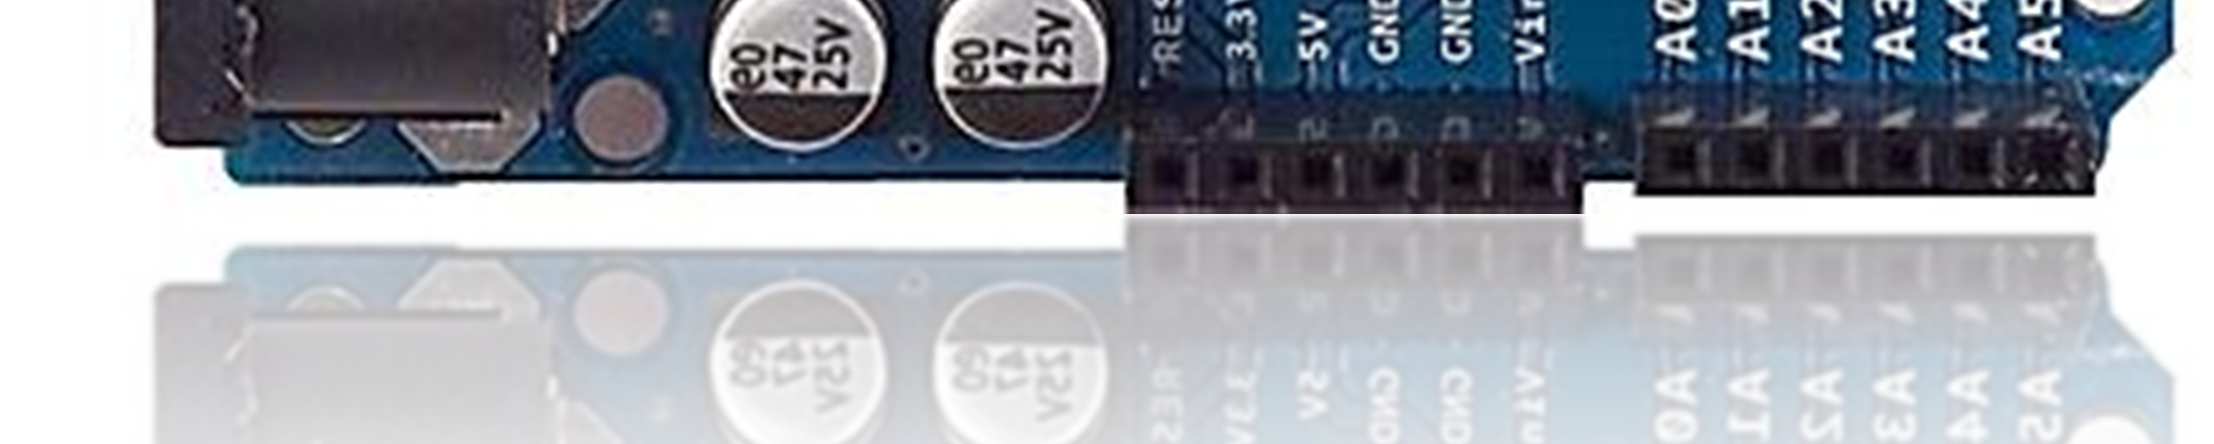 Arduino uno: Arduino uno è uno schema basato su uno microcontrollore ATmega328 che può essere alimentato via porta USB oppure tramite un alimentazione esterna compresa tra 7 e 12V.